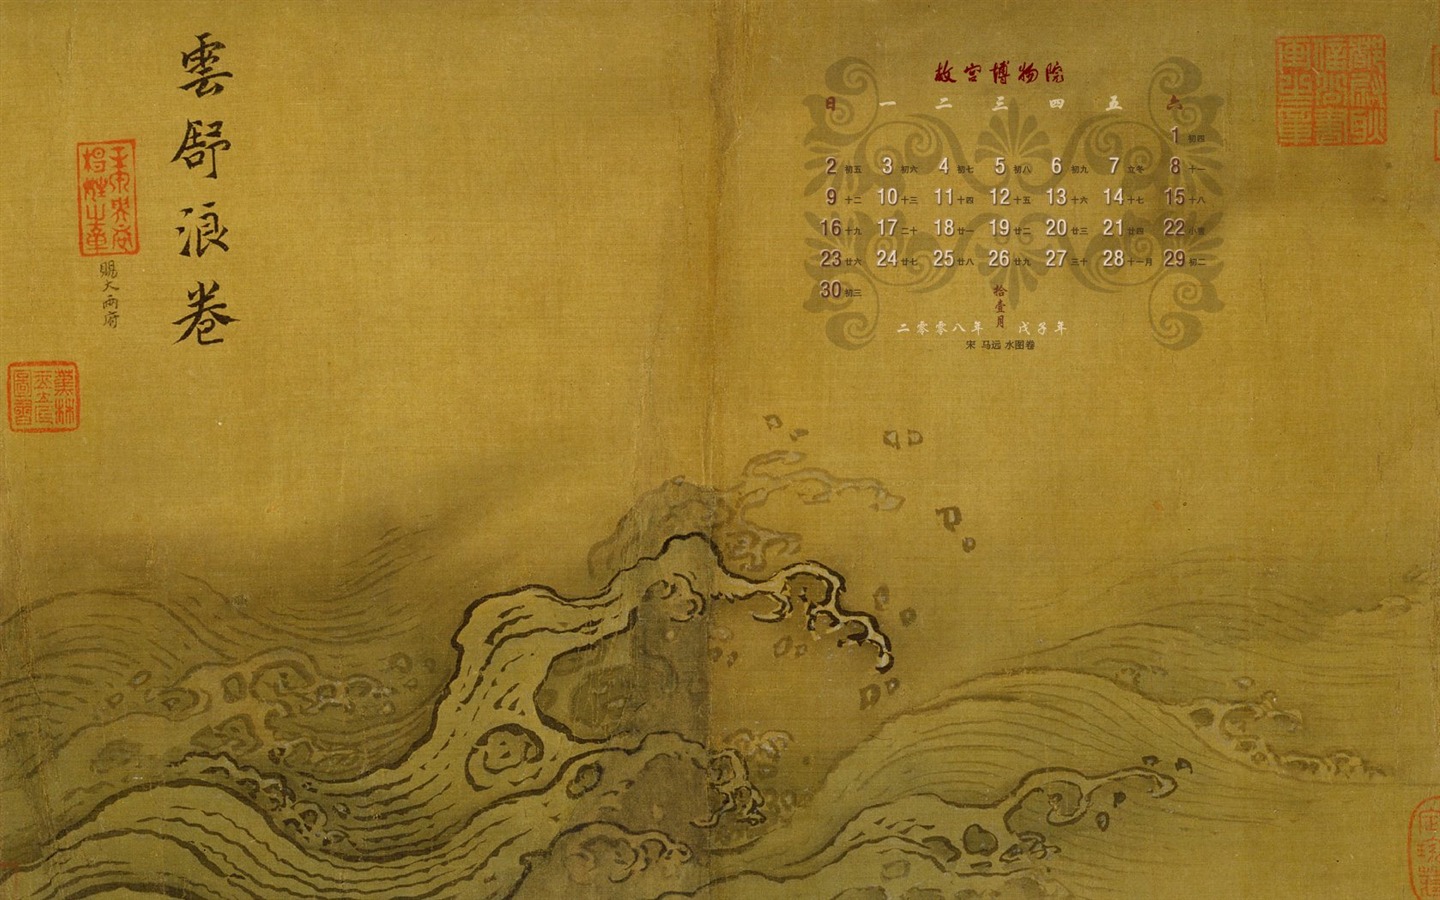 北京故宮博物院 文物展壁紙(二) #21 - 1440x900